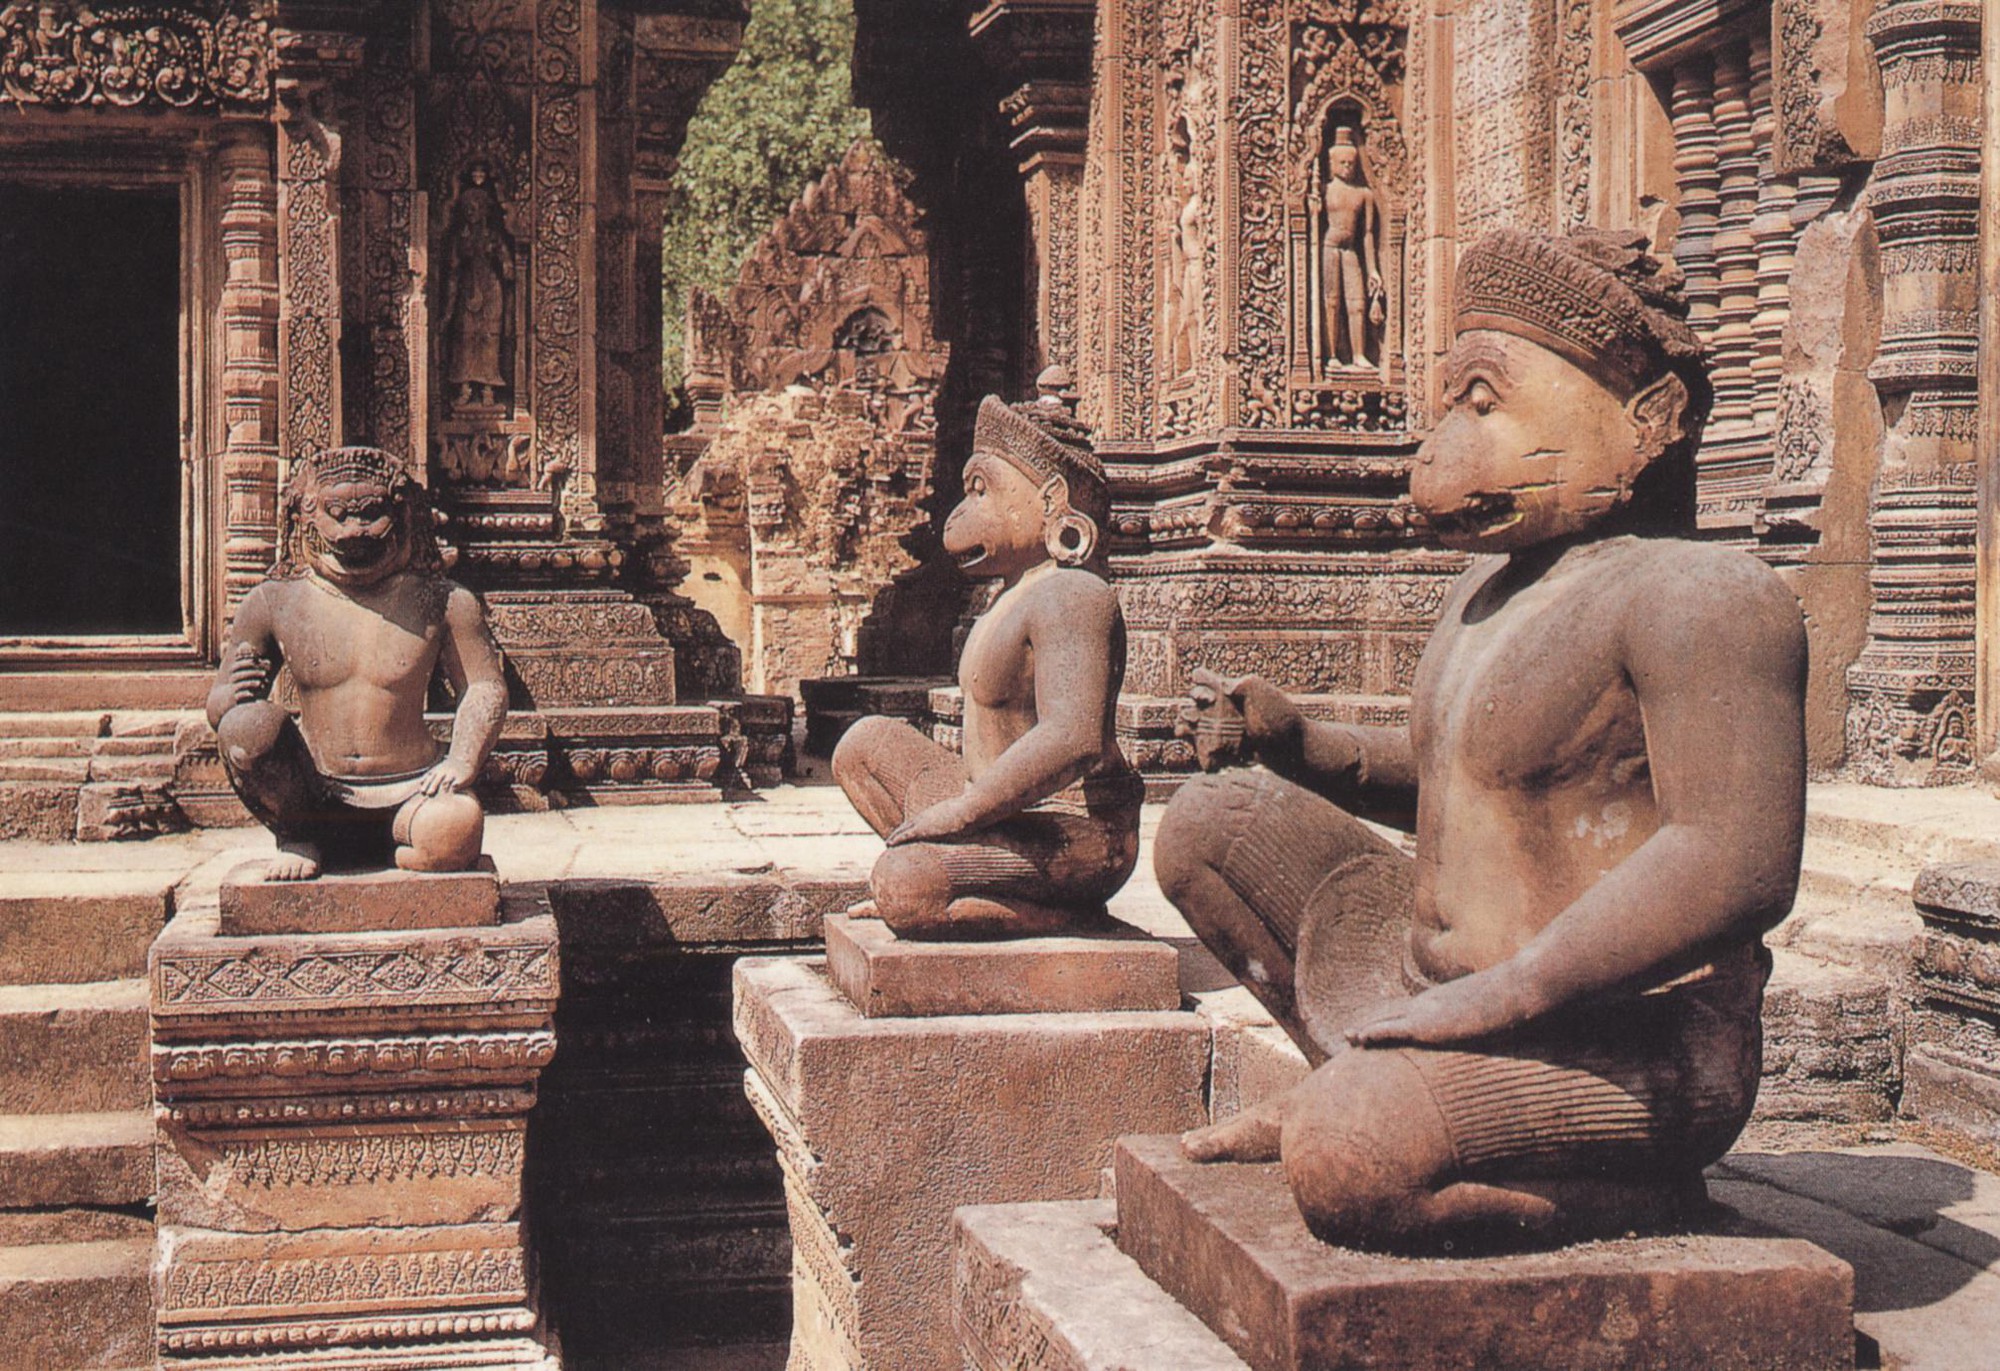 Được xây dựng vào đầu thế kỷ 12, Angkor Wat là một trong những di tích tôn giáo lớn nhất thế giới, thu hút hơn 2 triệu lượt khách du lịch tới thăm mỗi năm